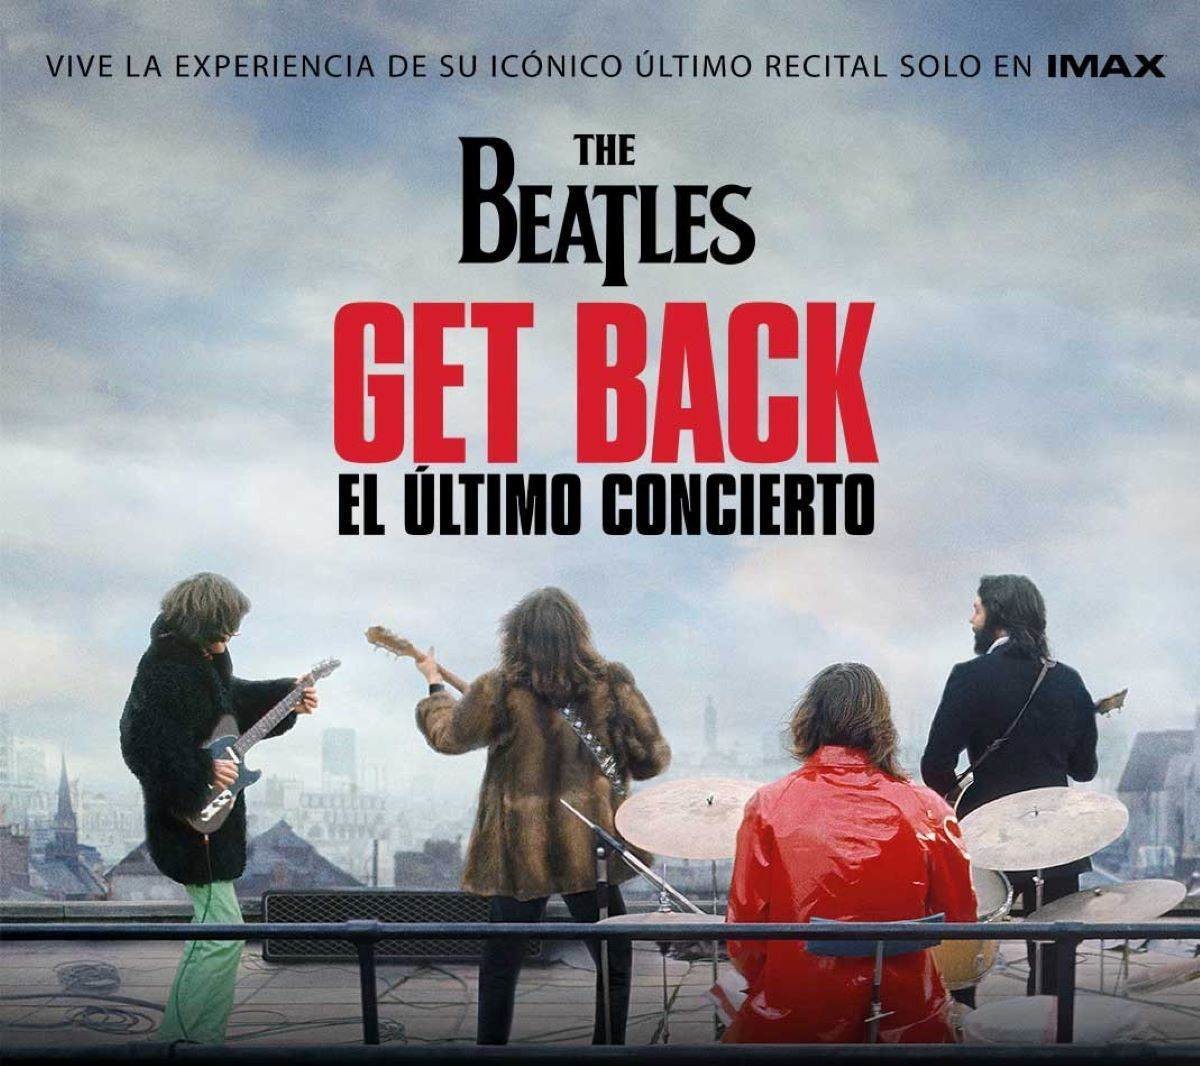 The Beatles: Get Back hará su debut en salas IMAX